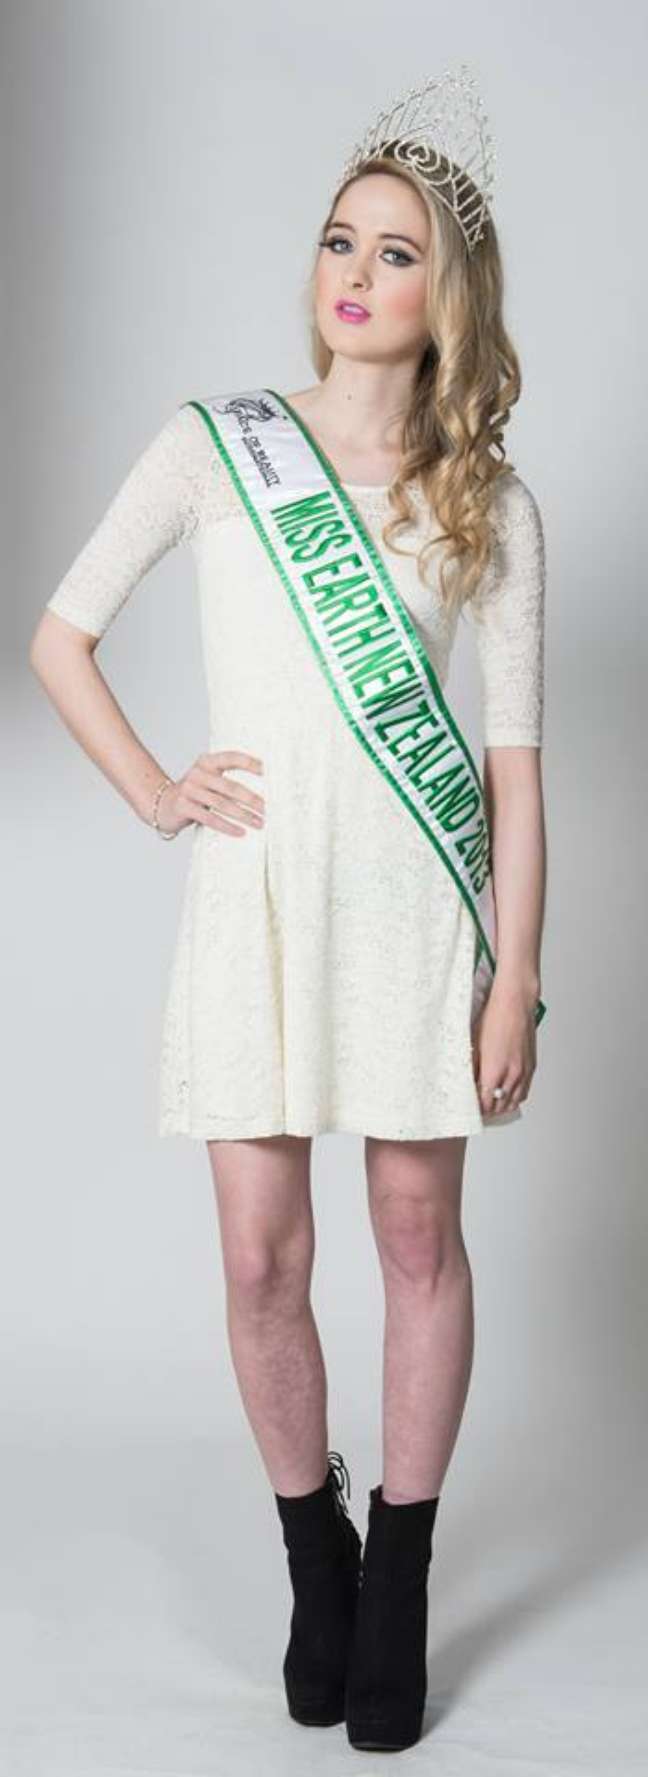 A modelo ganhou o título de Miss Mundo Nova Zelândia em 2013